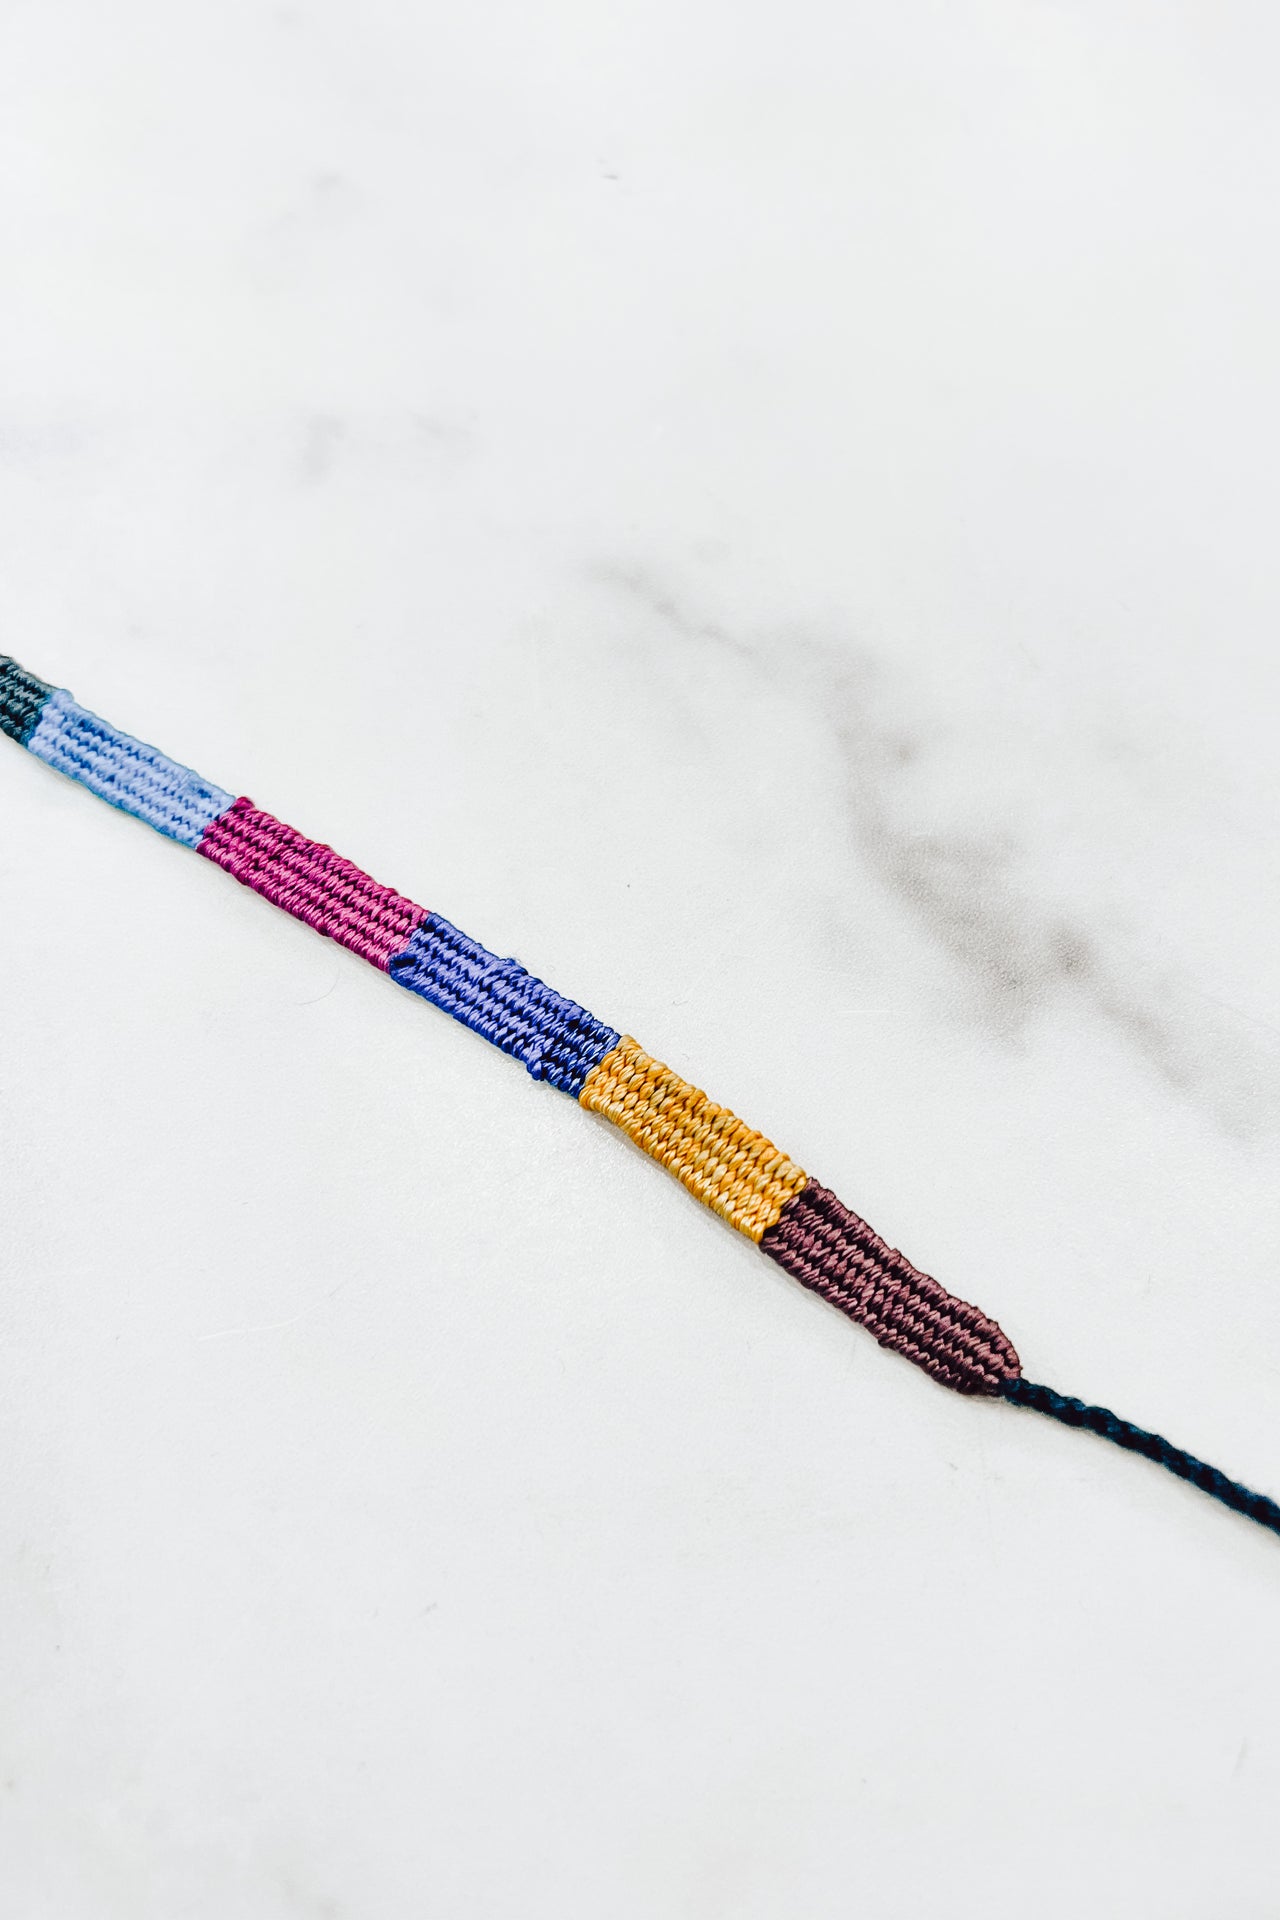 Handmade Friendship Bracelet or Anklet